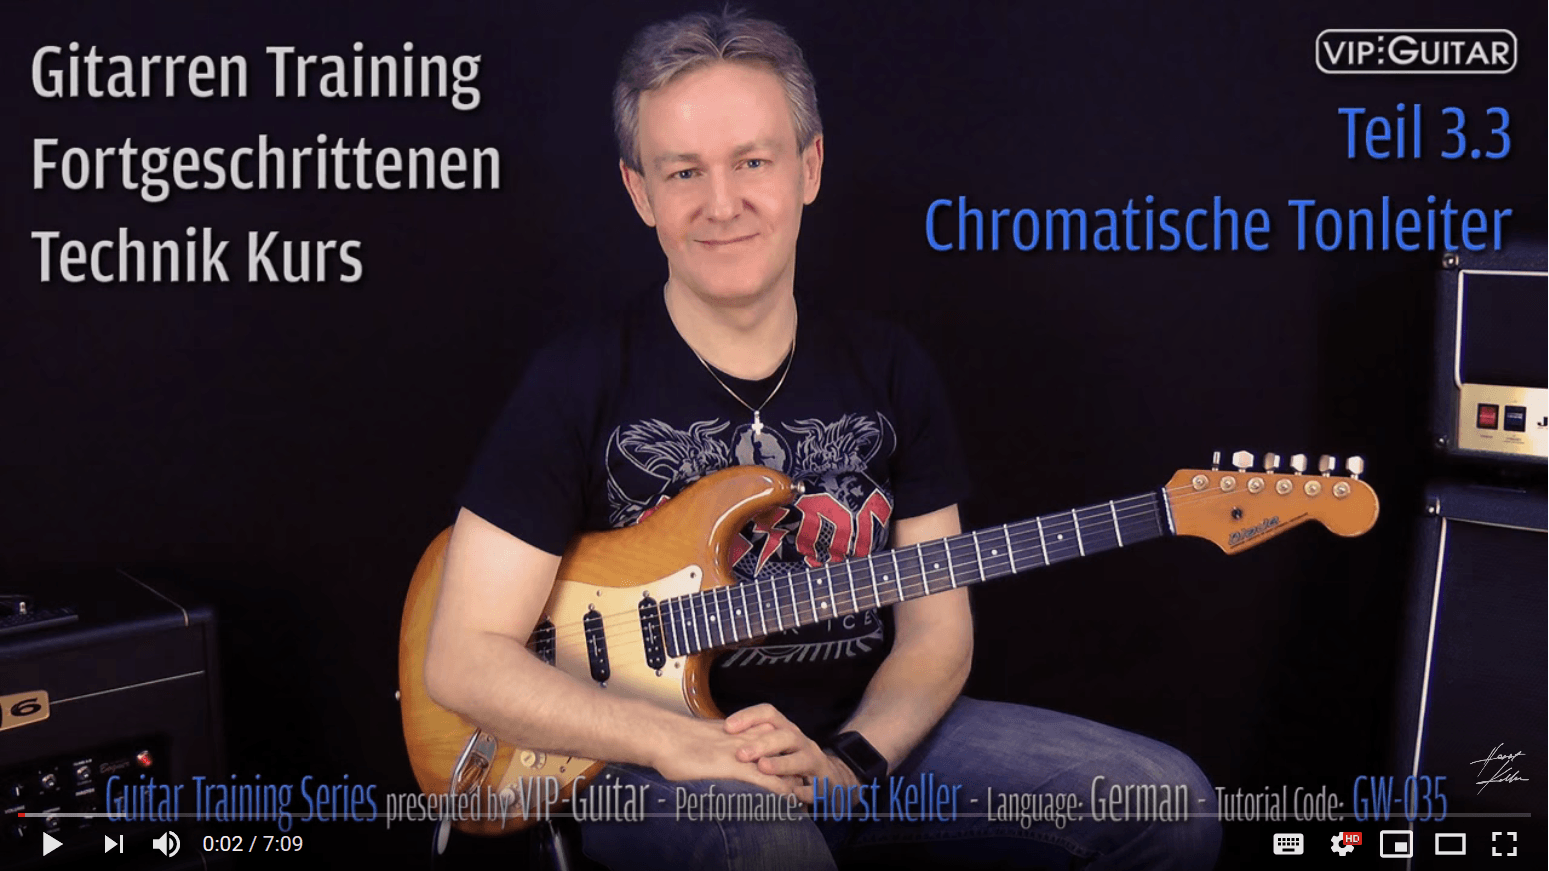 Gitarren Training - Fortgeschrittenen Technik Kurs